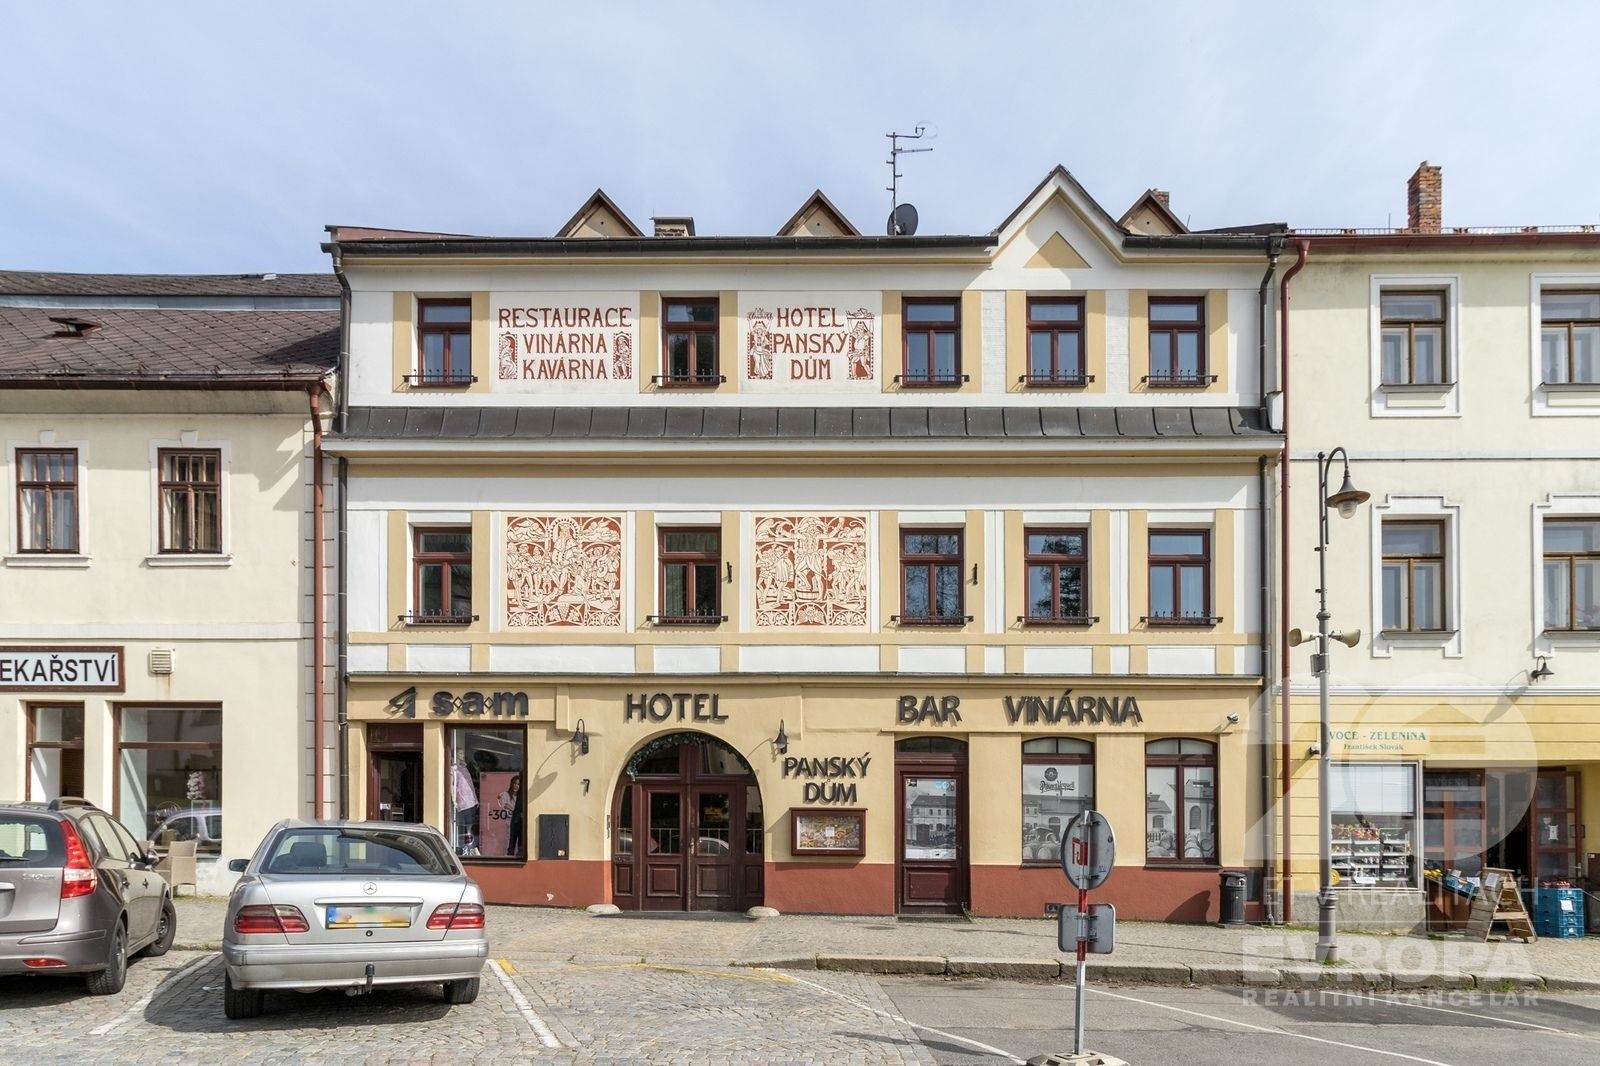 Ubytovací zařízení, Vratislavovo náměstí, Nové Město na Moravě, 1 100 m²